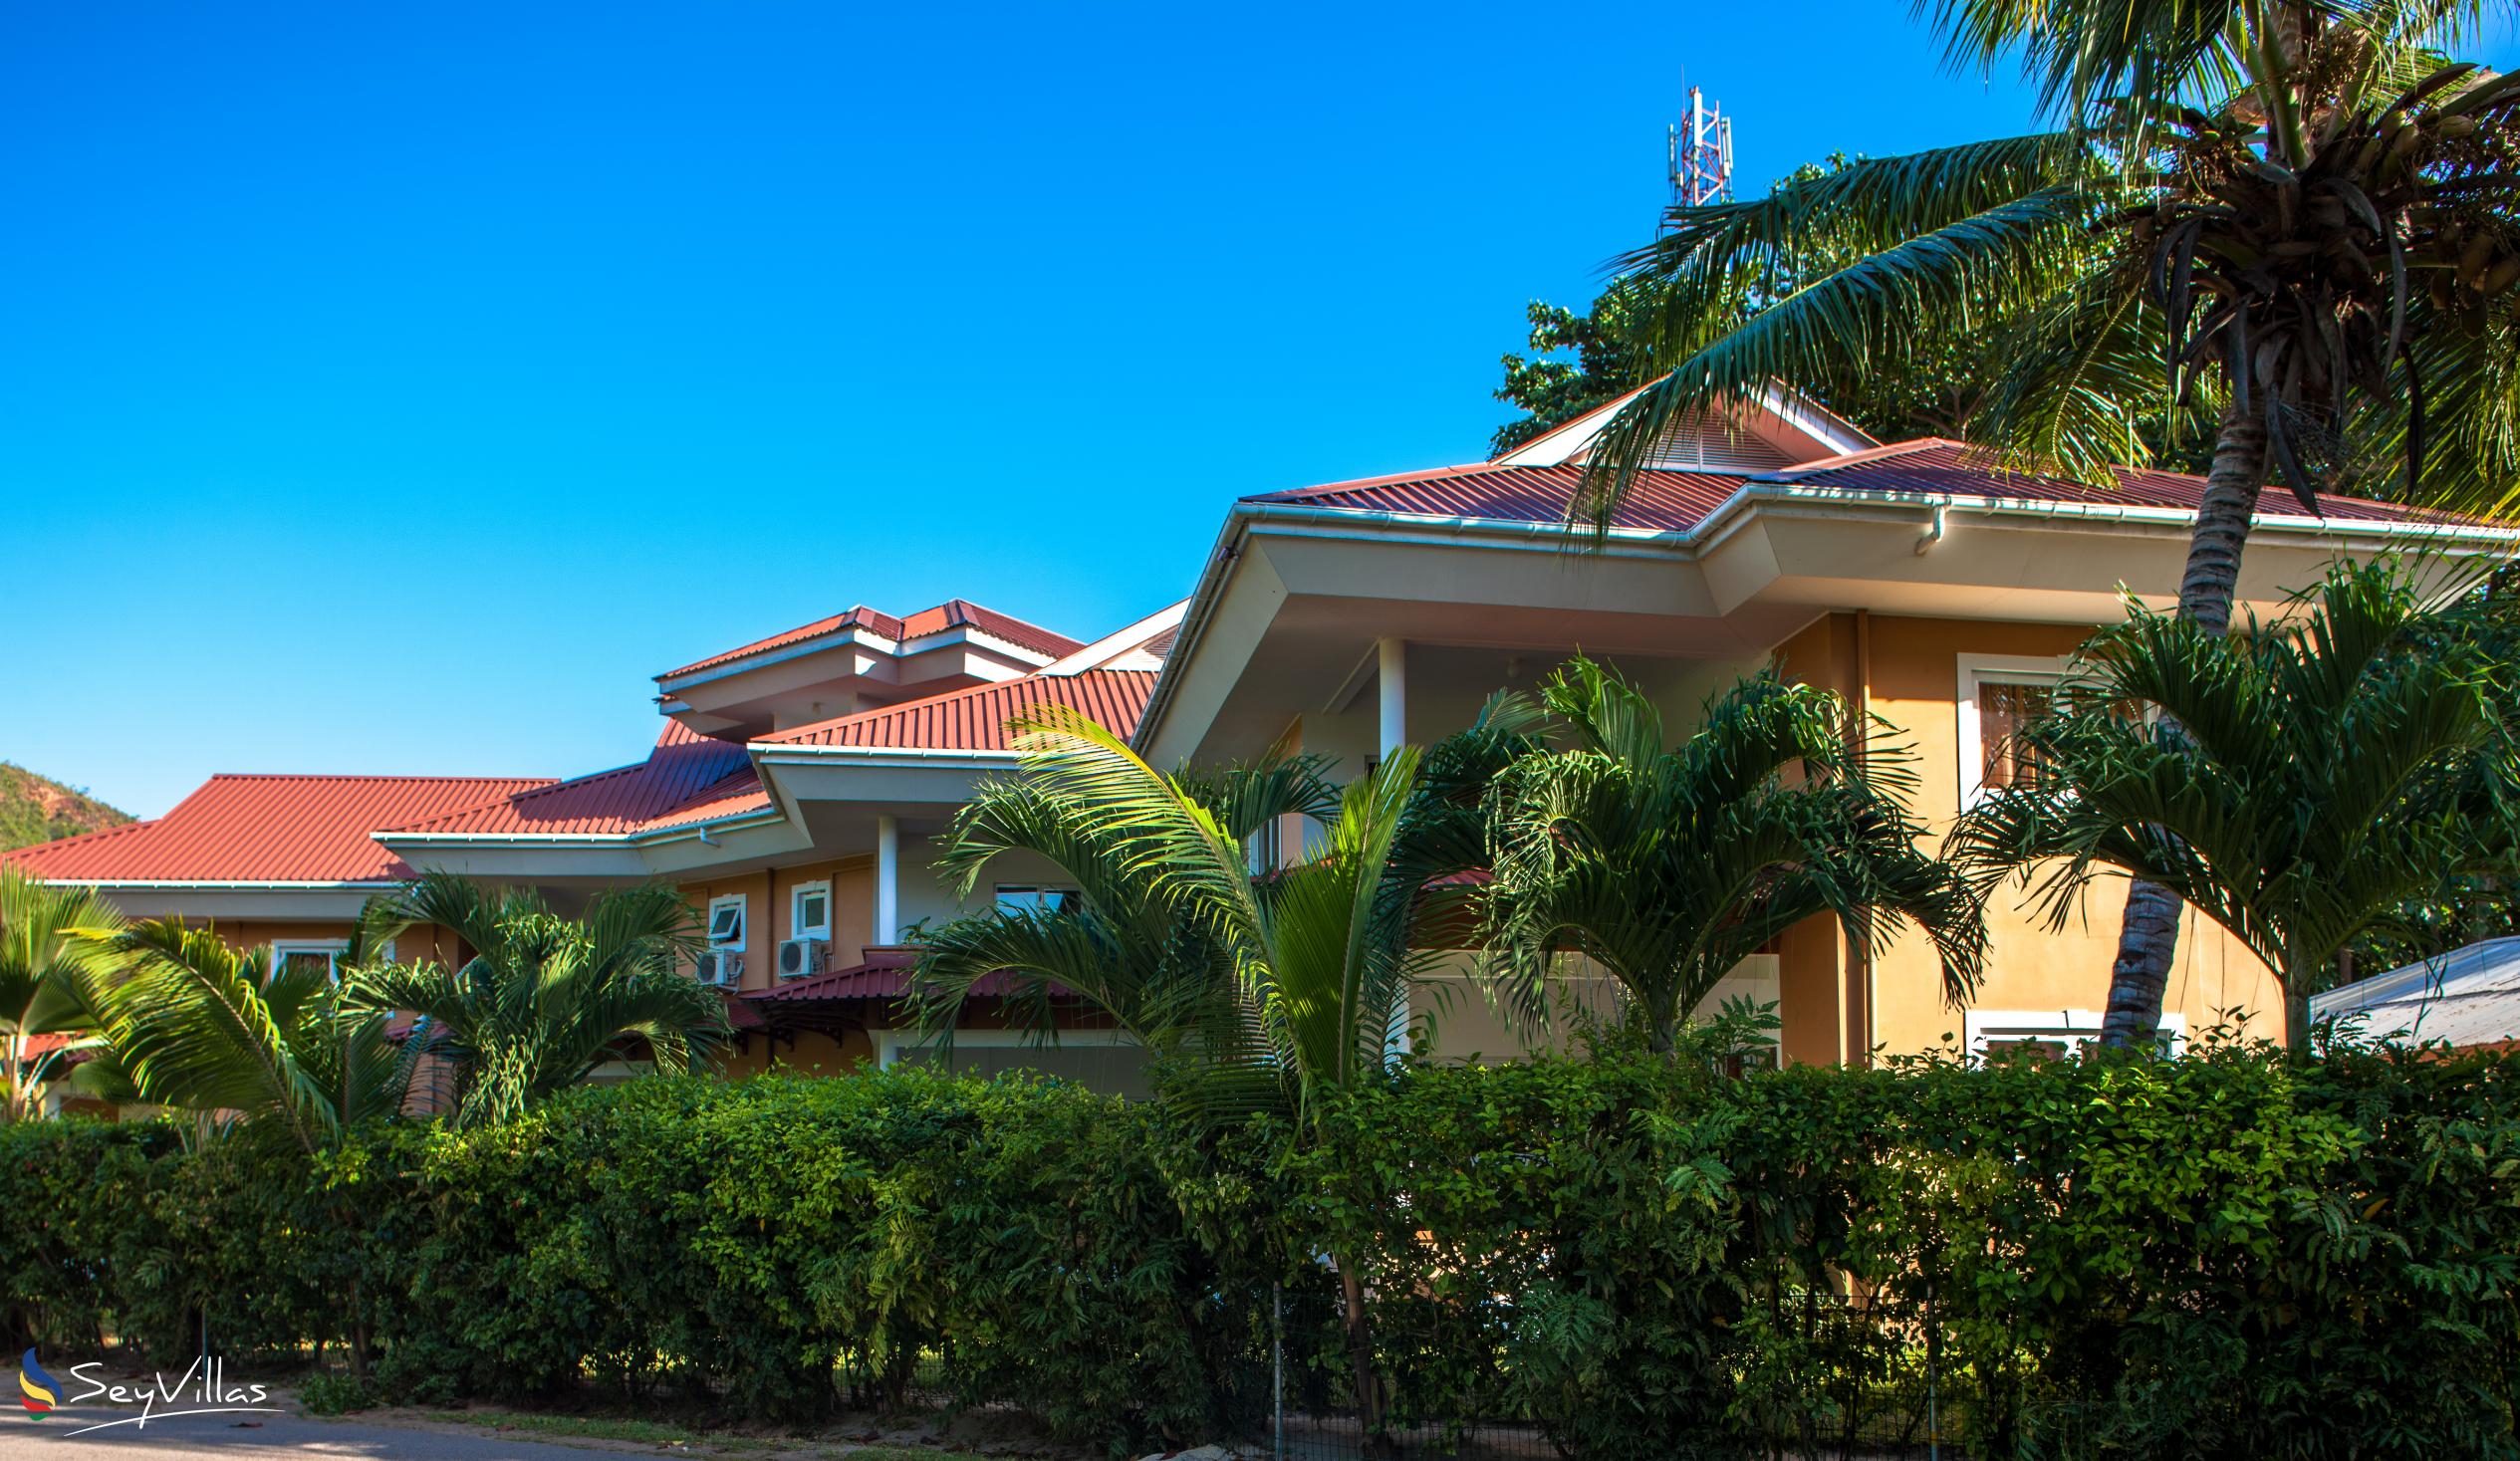 Foto 11: Cote d'Or Apartments - Extérieur - Praslin (Seychelles)